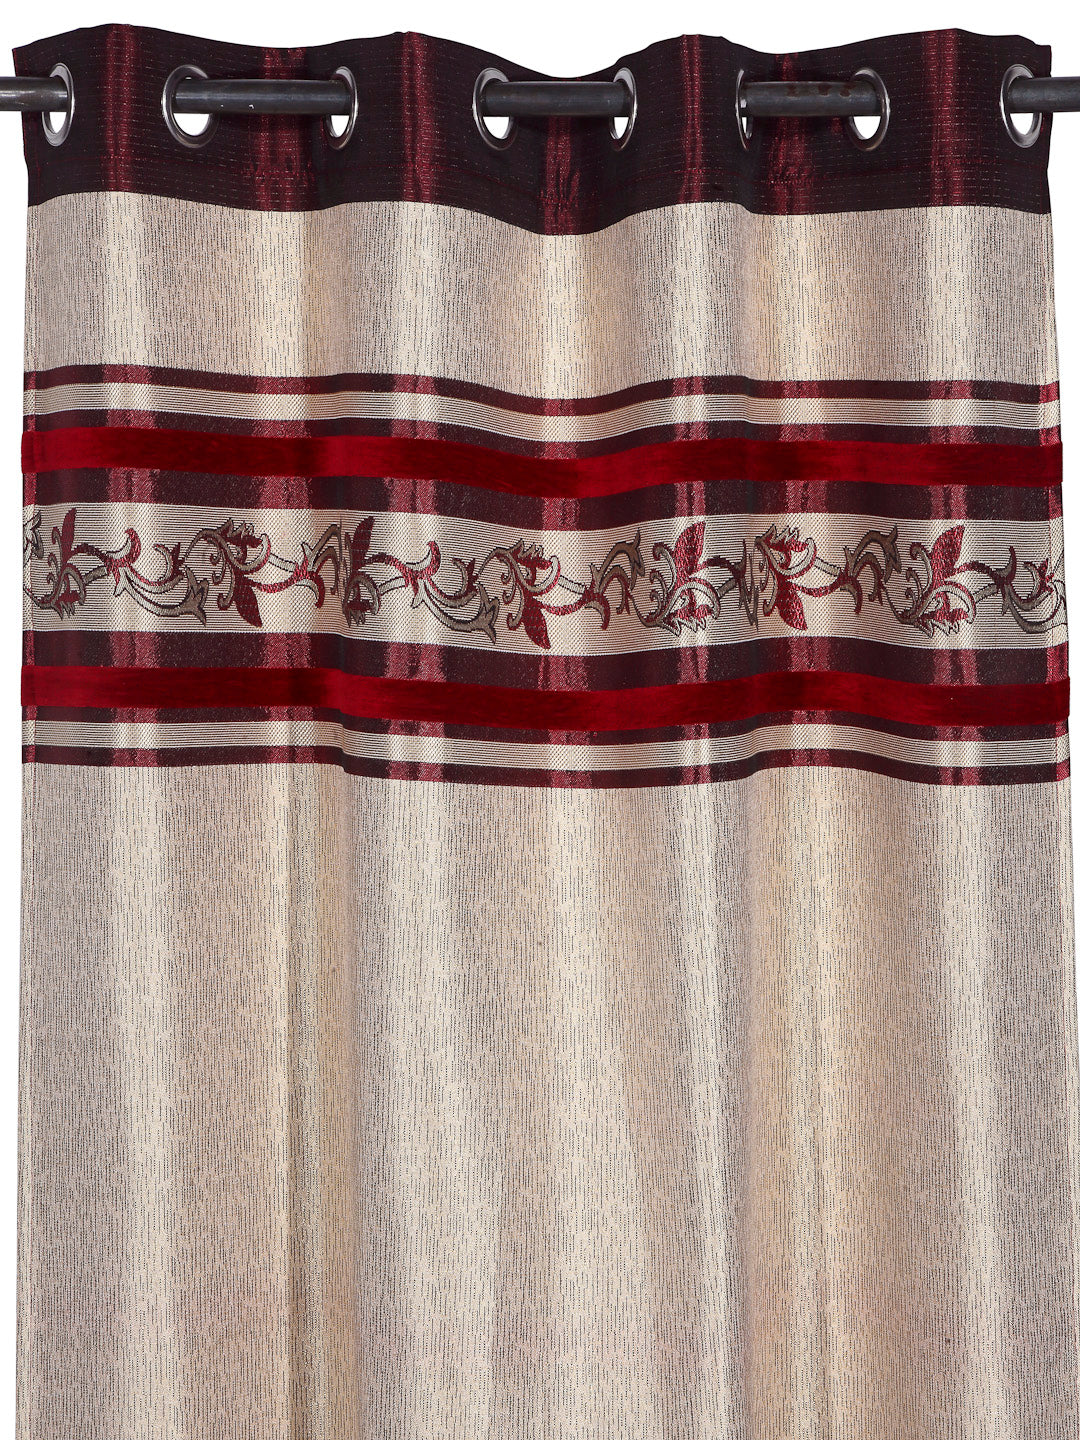 Arrabi Red Leaf Print TC Cotton Blend Set of 2 Long Door Curtains (275 X 120 cm)